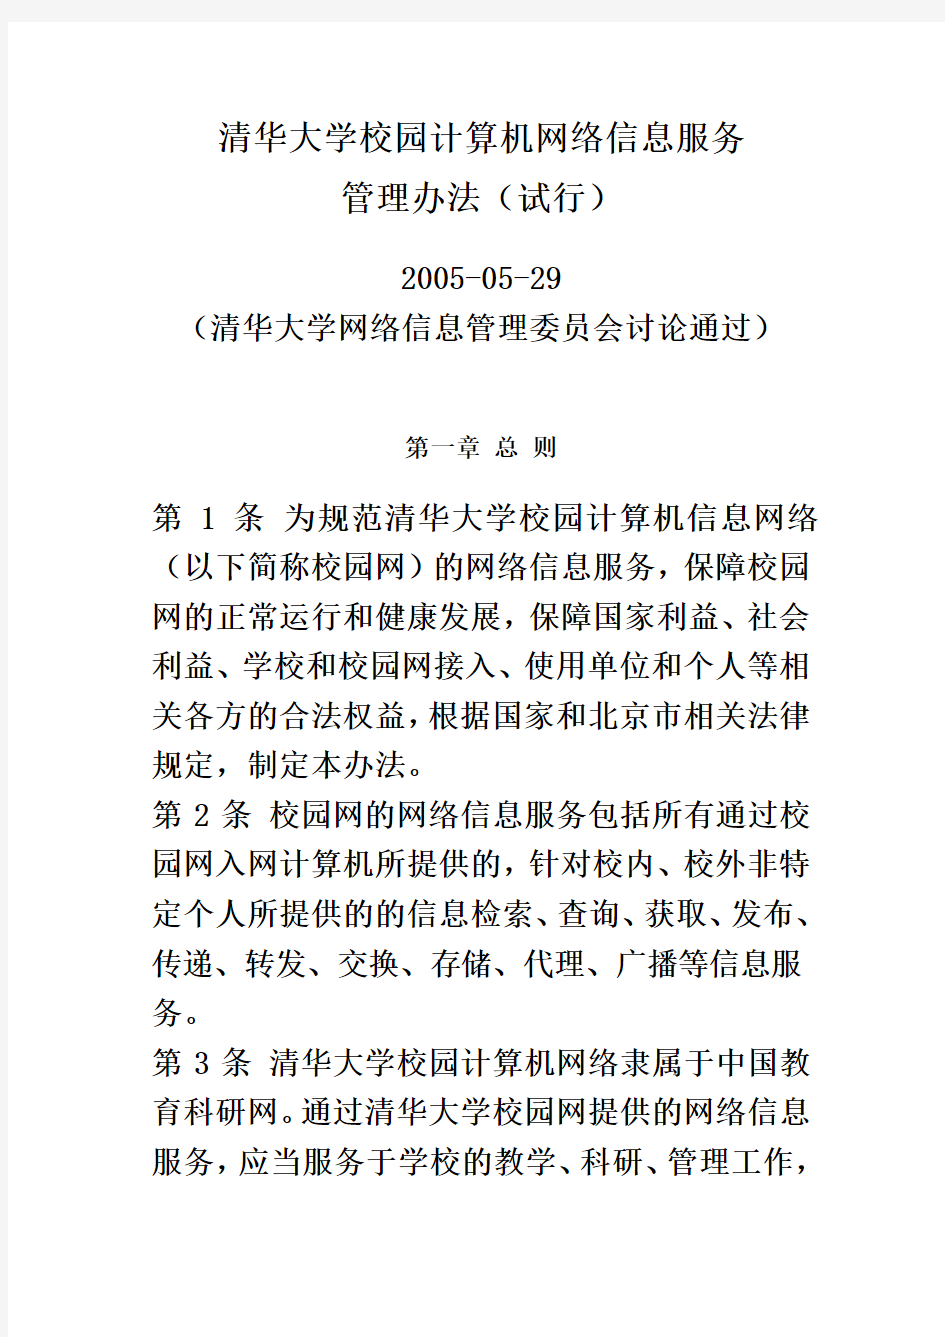 清华大学校园计算机网络信息服务管理办法(试行)(同名3465)